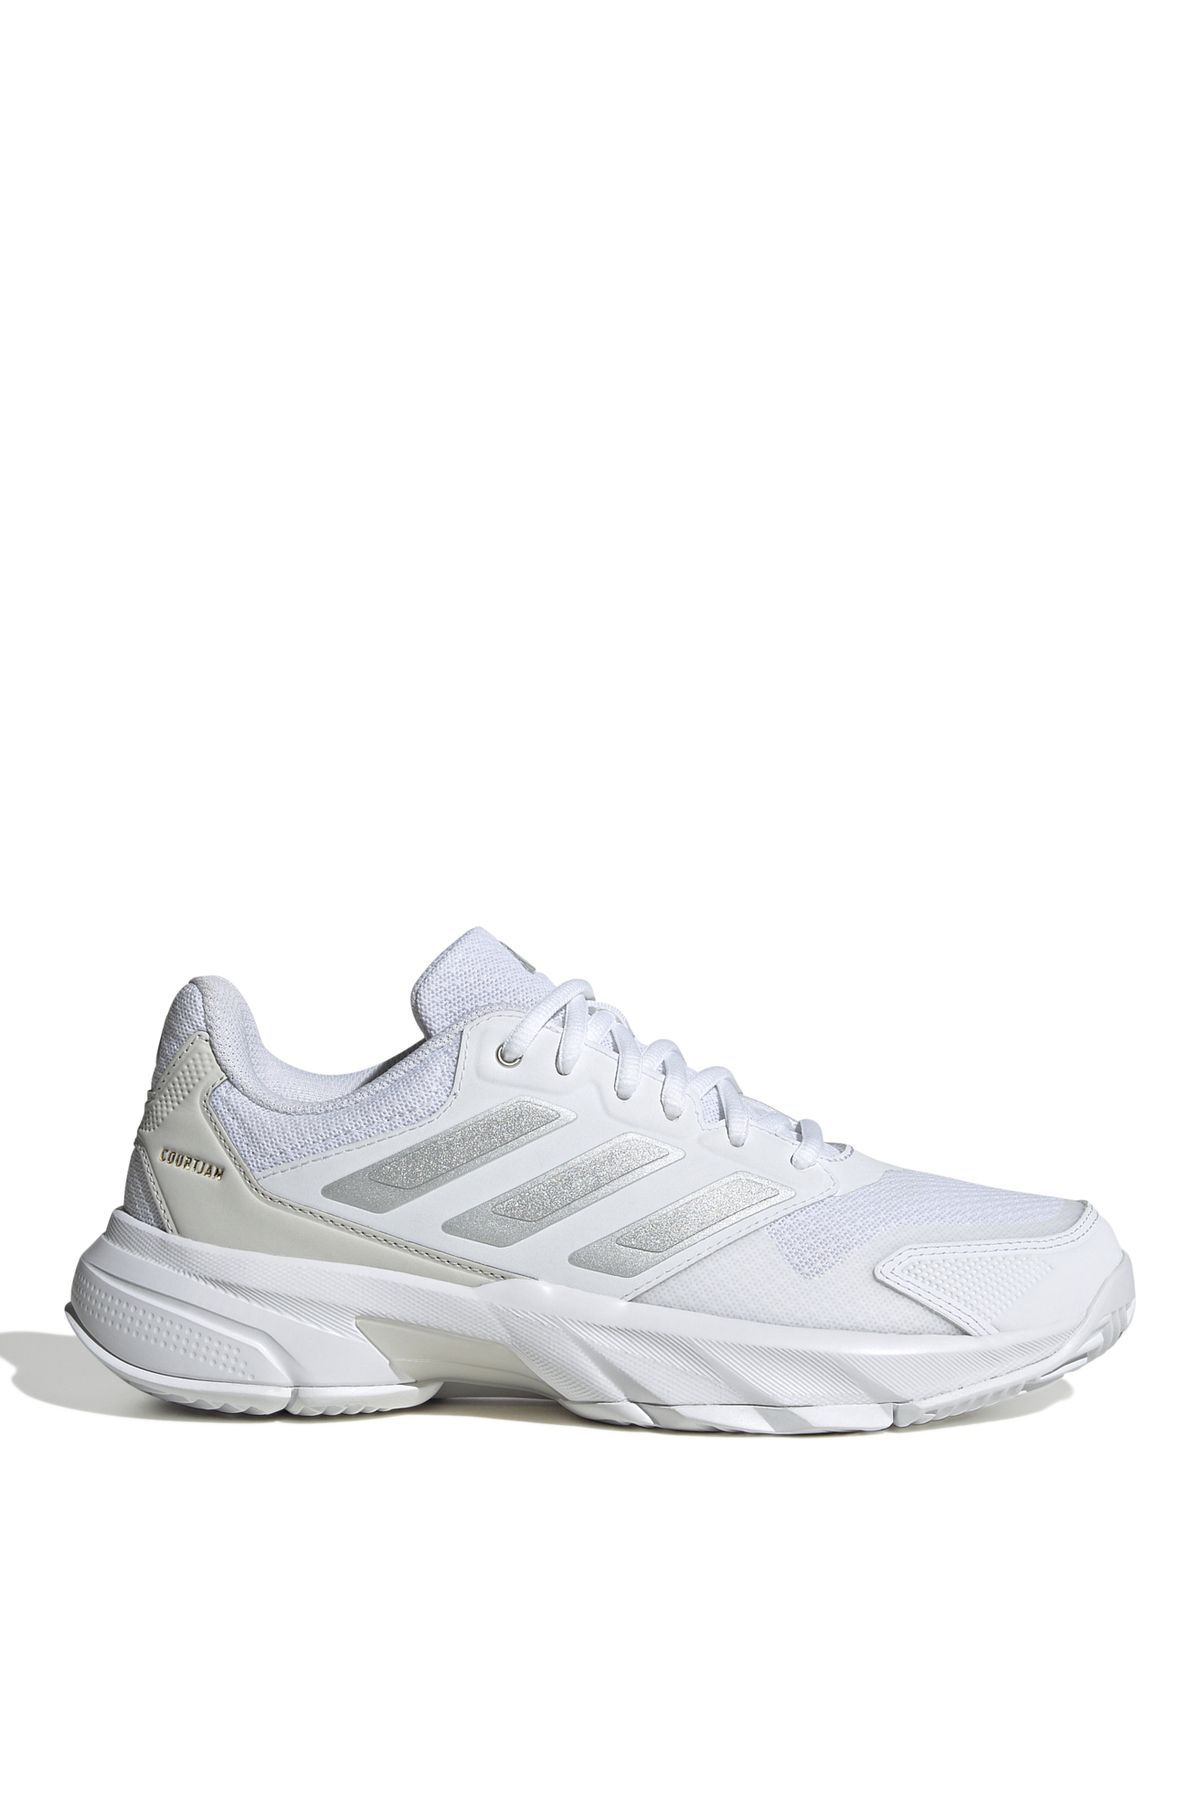 adidas Beyaz Kadın Tenis Ayakkabısı ID2457 CourtJam